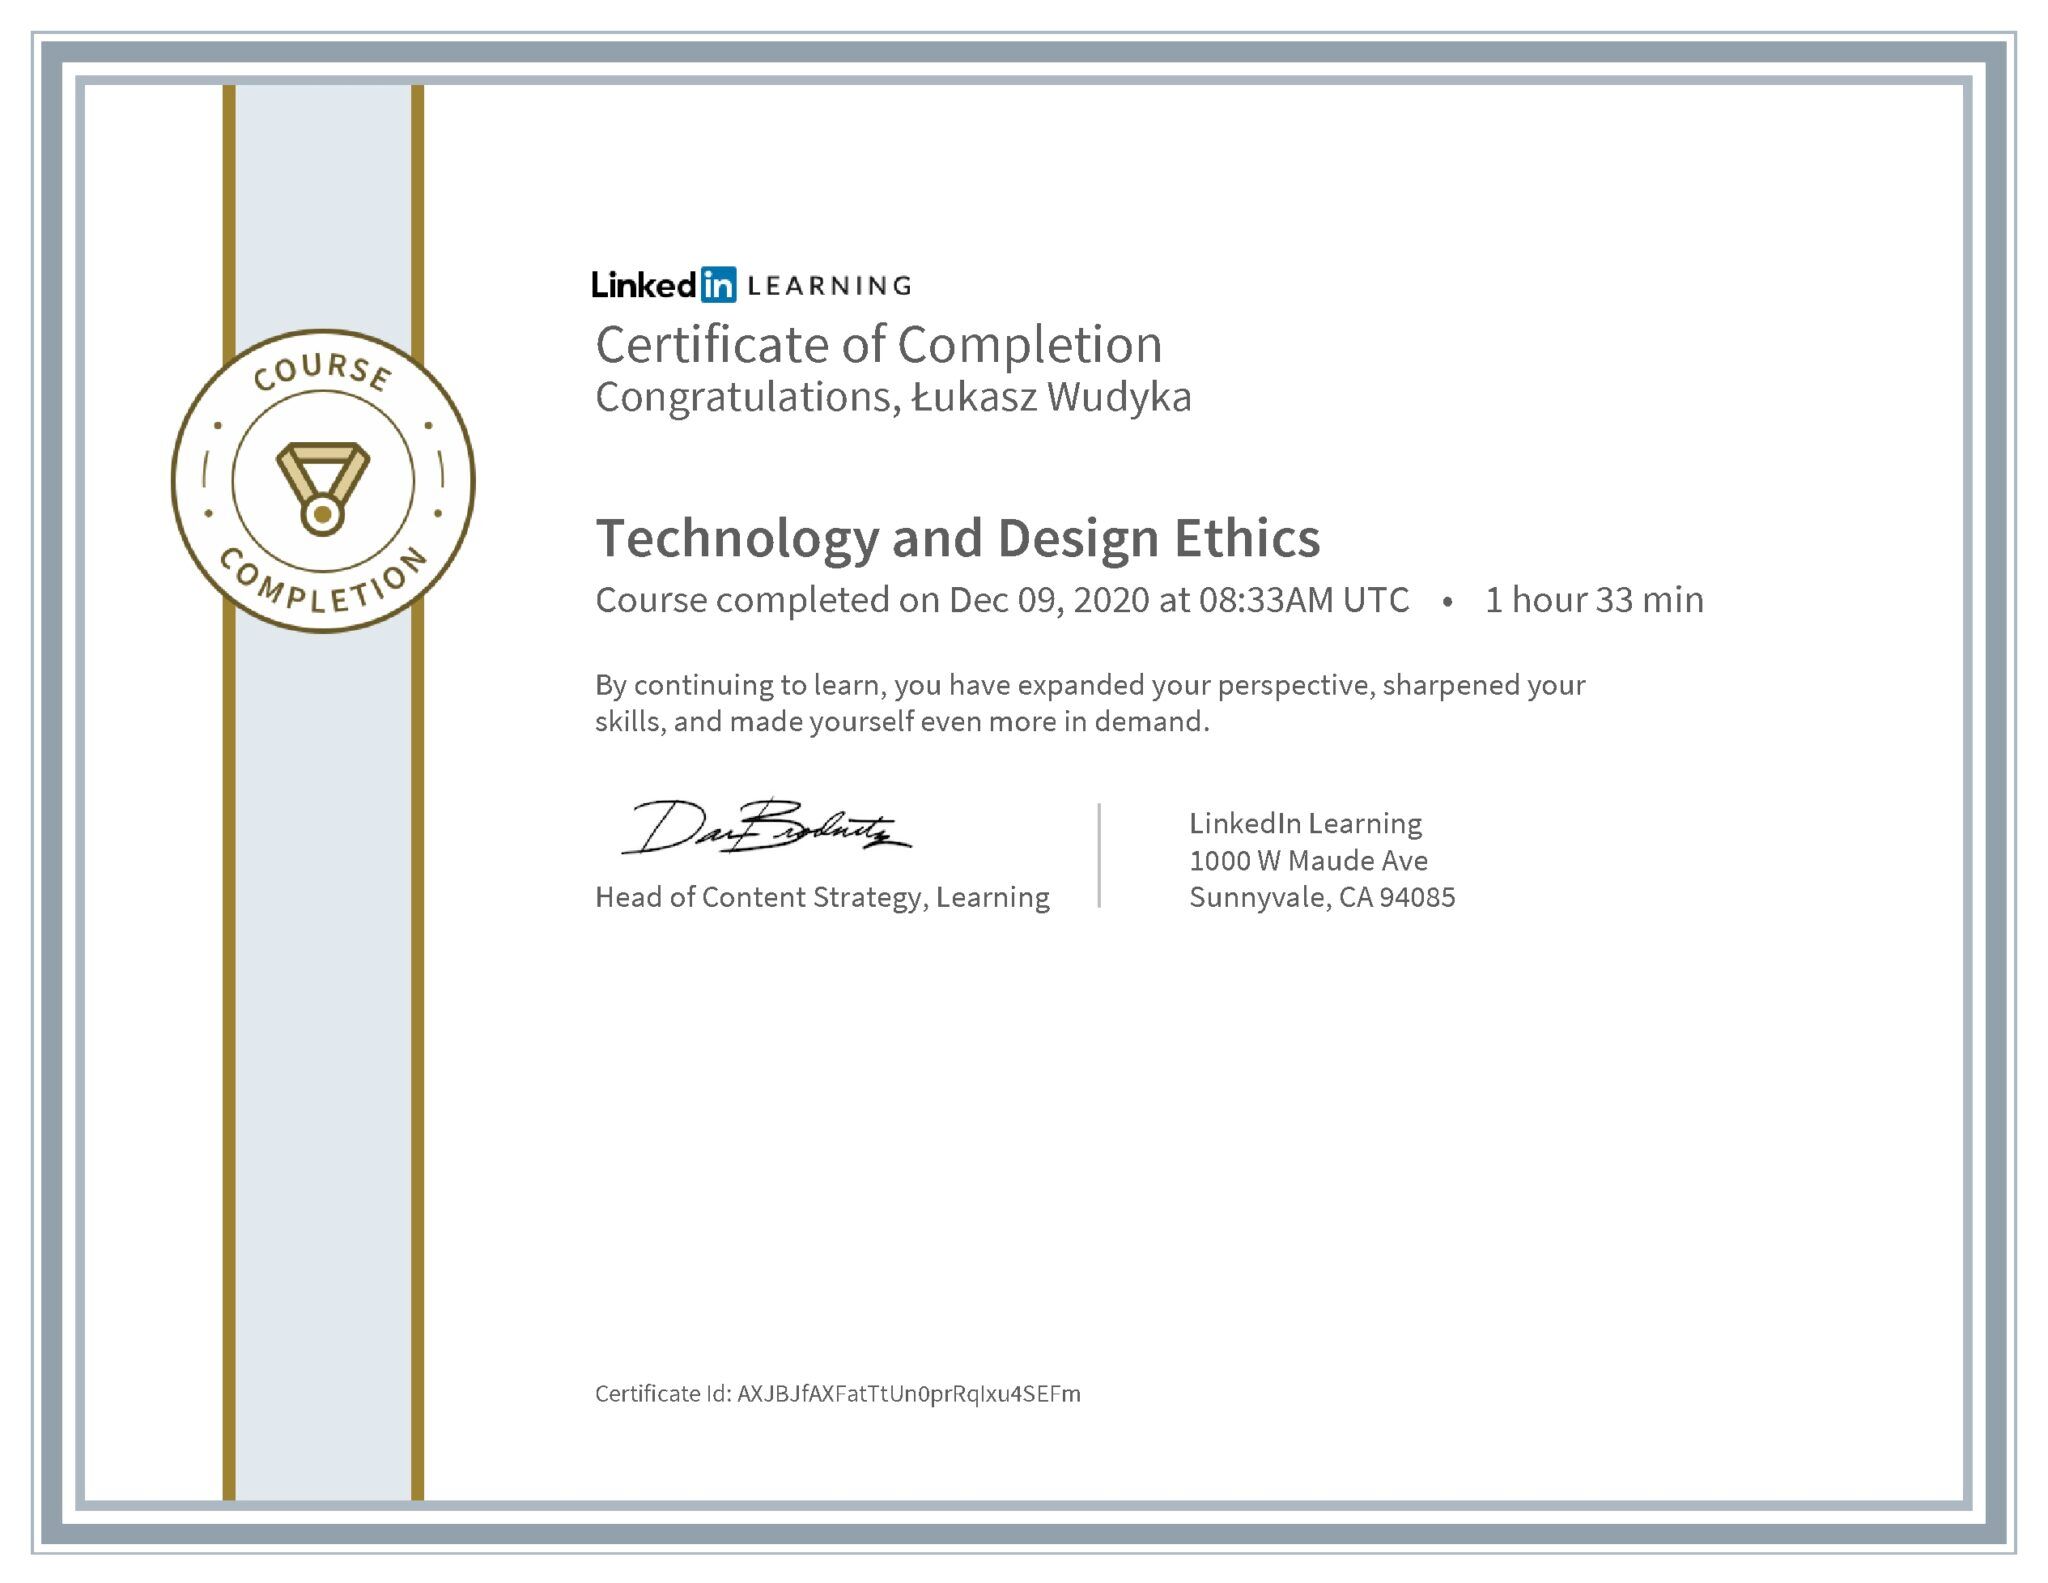 Łukasz Wudyka certyfikat LinkedIn Technology and Design Ethics